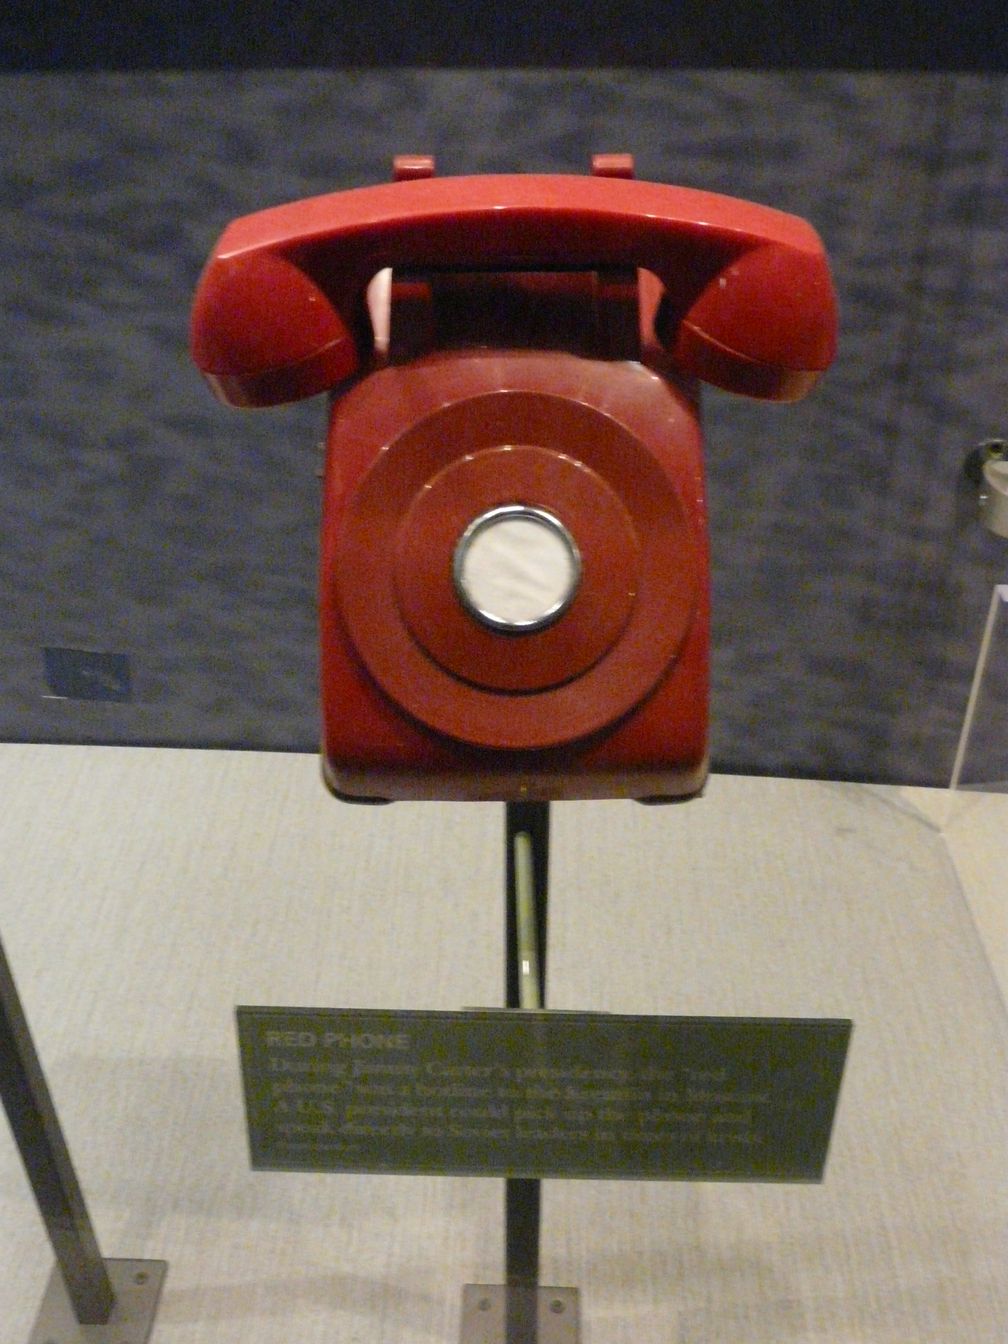 Ein Rotes Telefon aus der Zeit von Jimmy Carter, das aber nie Bestandteil des heißen Drahtes, sondern wohl nur des amerikanischen Defense Red Switch Networks war. (Symbolbild)